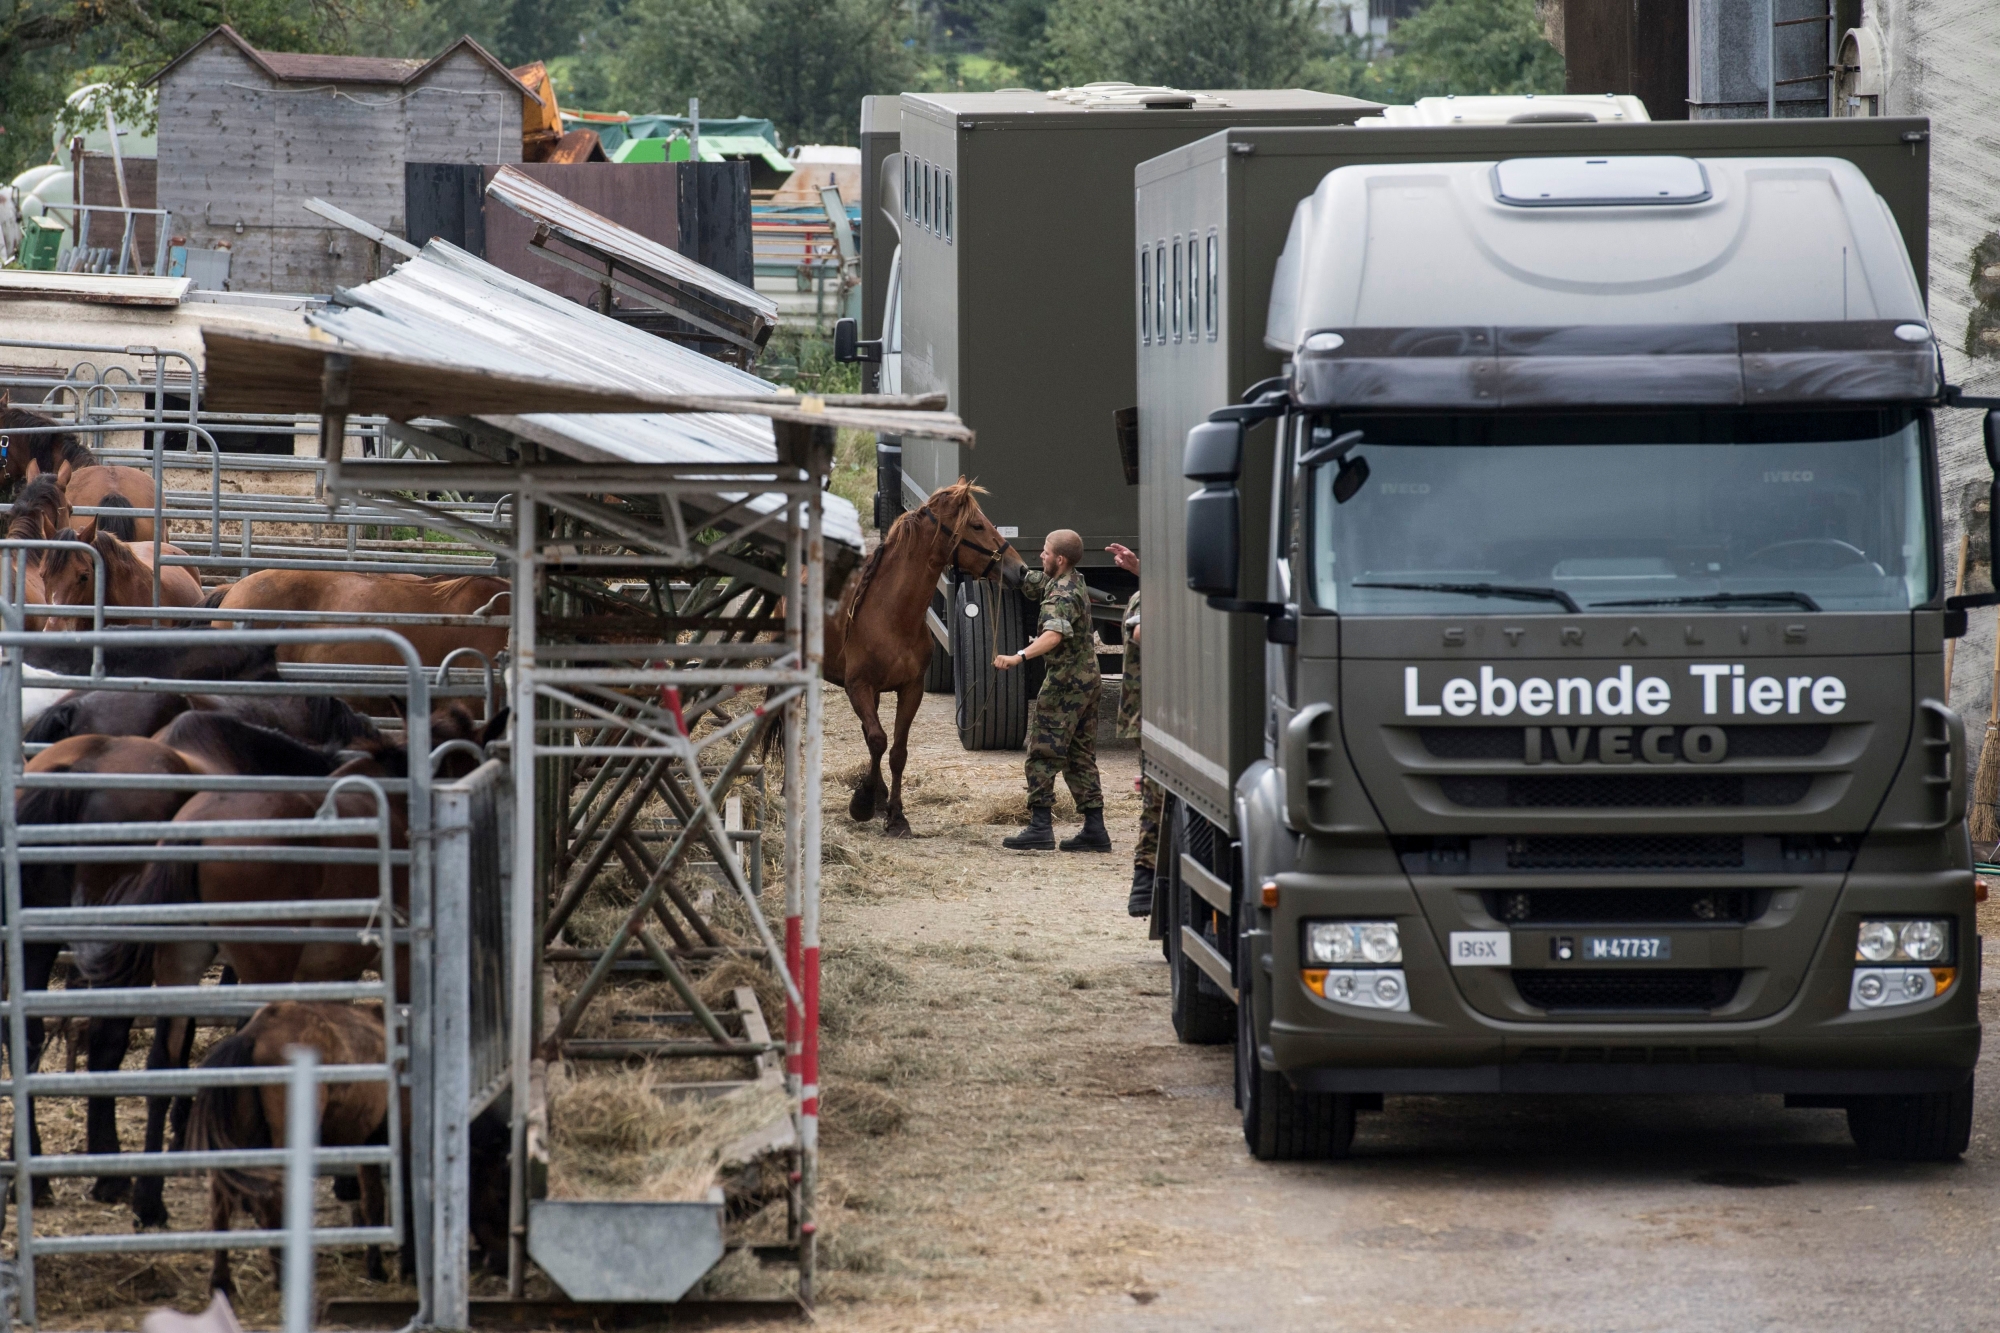 Das Militaer sichert die Pferde vom Hof von Ulrich K., der unter dem Verdacht der Quaelerei von Pferden steht, aufgenommen am Dienstag, 8. August 2017, in Hefenhofen. (KEYSTONE/Ennio Leanza) SCHWEIZ SKANDAL PFERDEZUCHT ULRICH K.